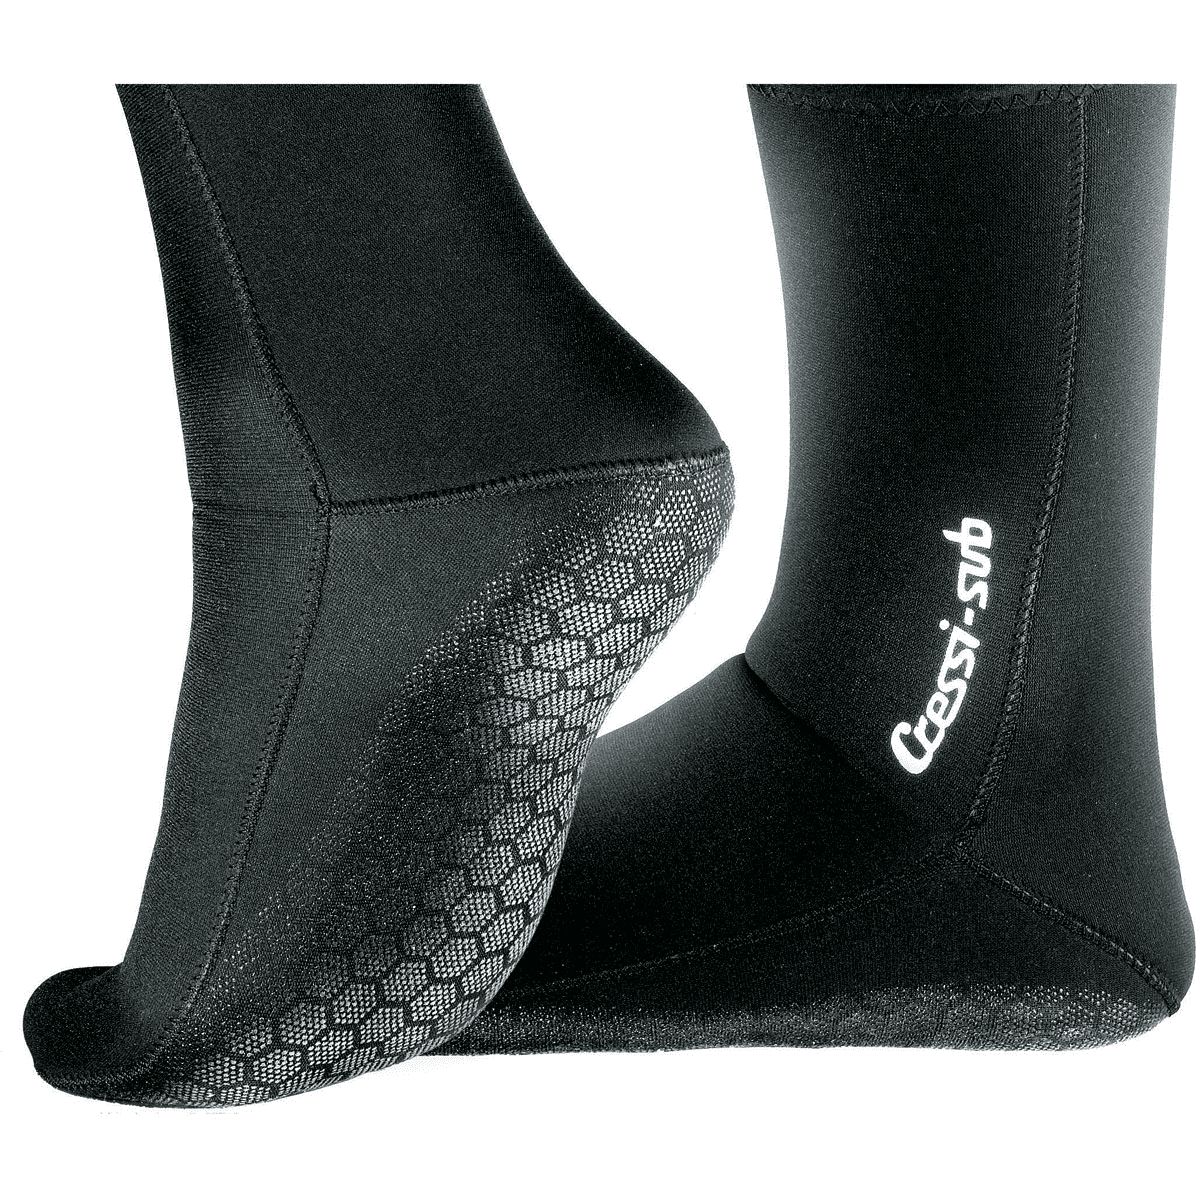 DAKINE Fin Socks Size Large 3-pack Bundle for sale online 